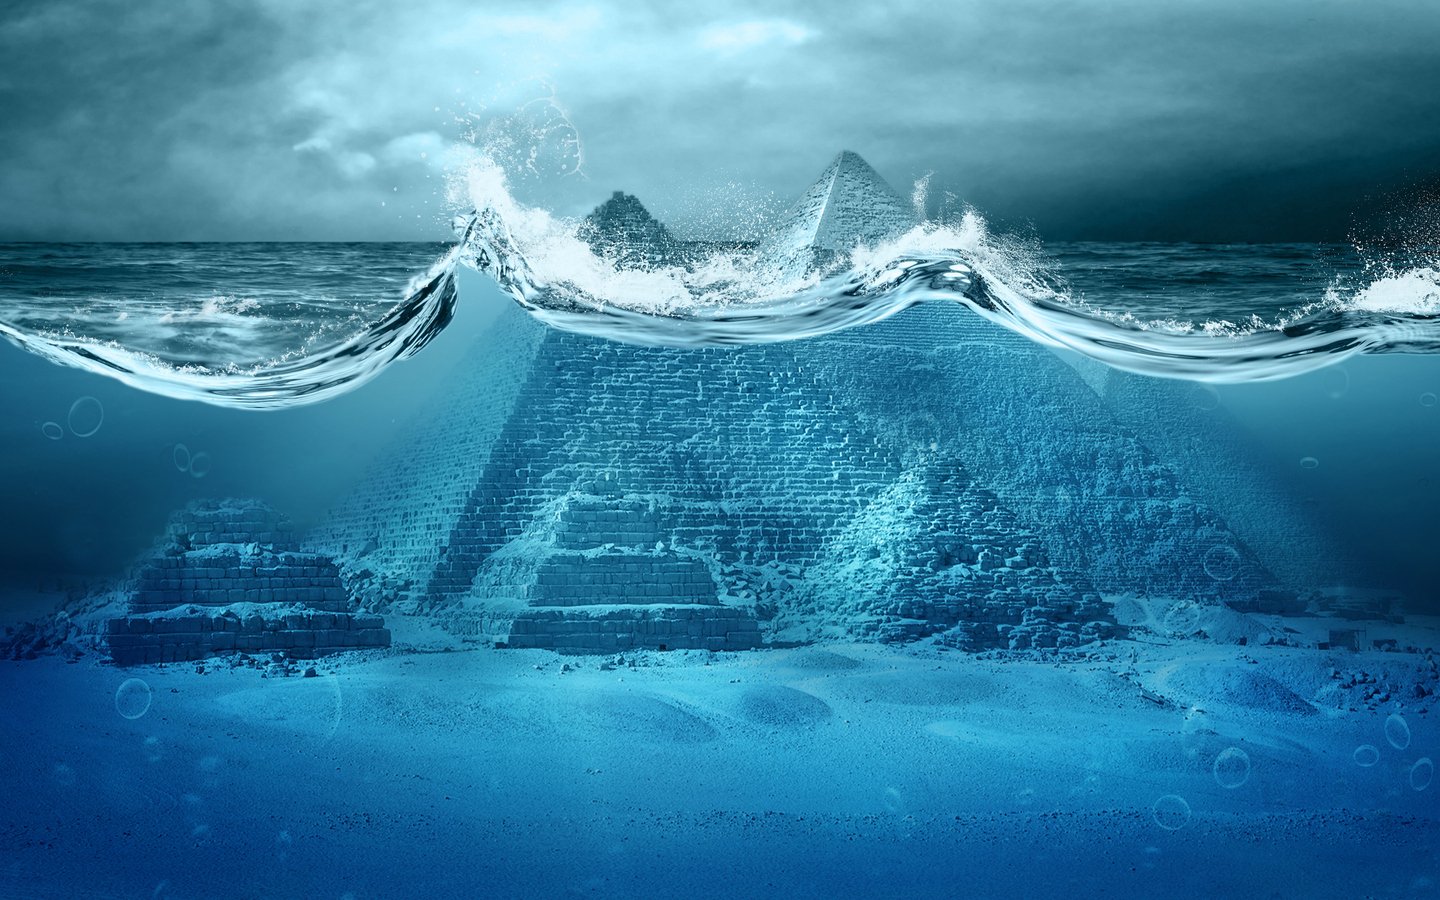 Pirâmides de Gizé poderiam estar debaixo d'água por muito tempo